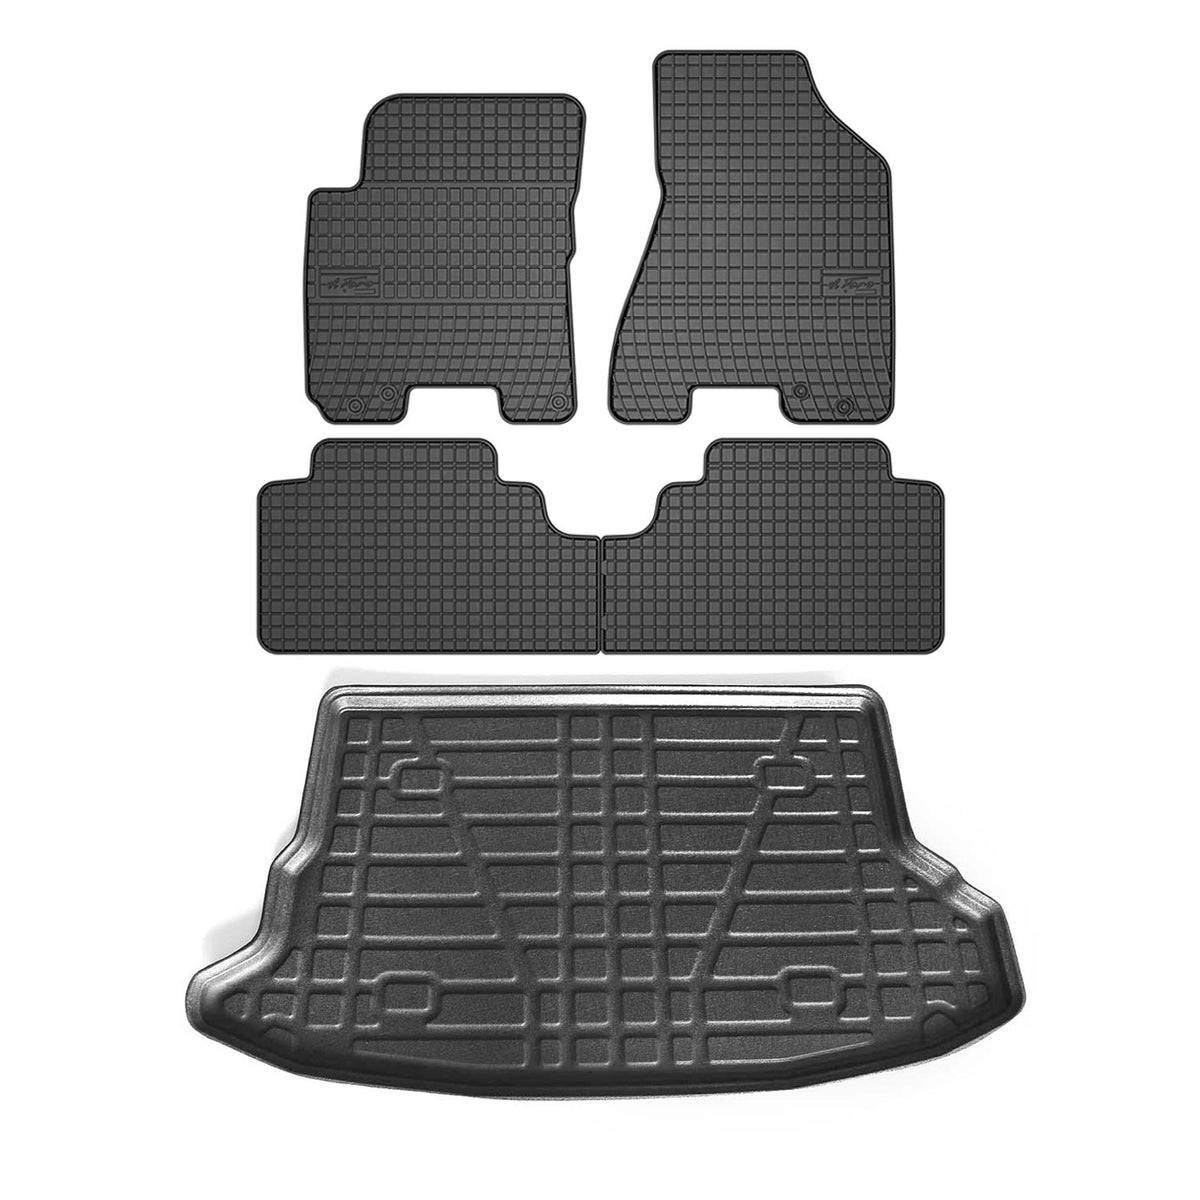 Fußmatten & Kofferraumwanne Set für Hyundai Tucson 2004-2010 Gummi Schwarz 5x